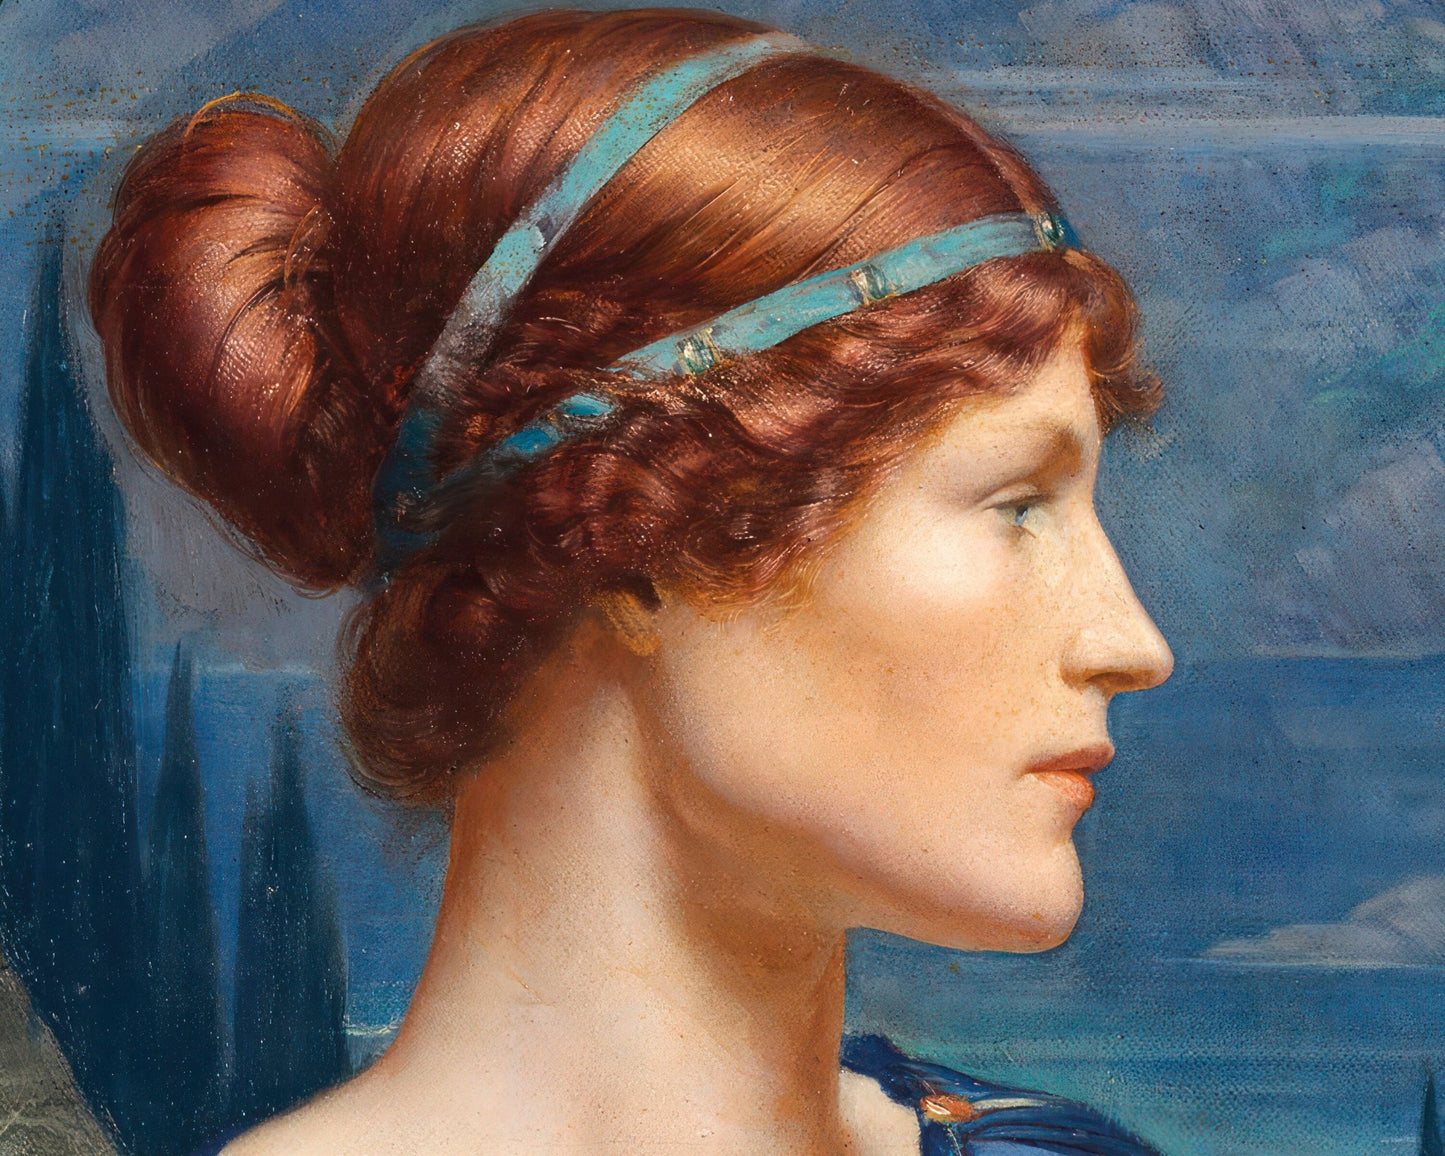 Sydney Harold Meteyard (attributed) "Penelope at her Loom" (c.1900) - Mabon Gallery